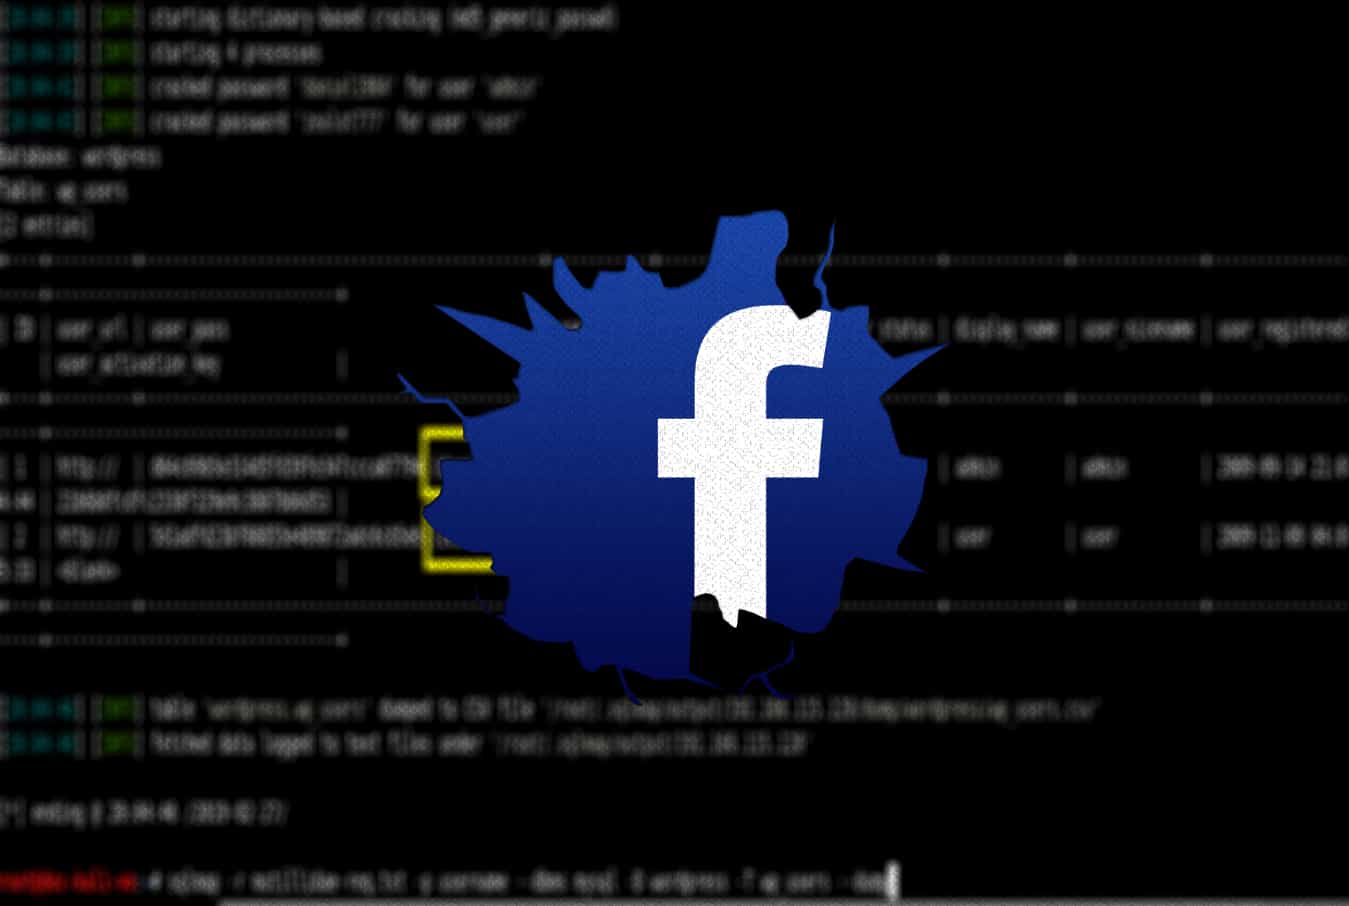 Facebook Data Leak Download - A Scandal That Affected Social Media Service Badly